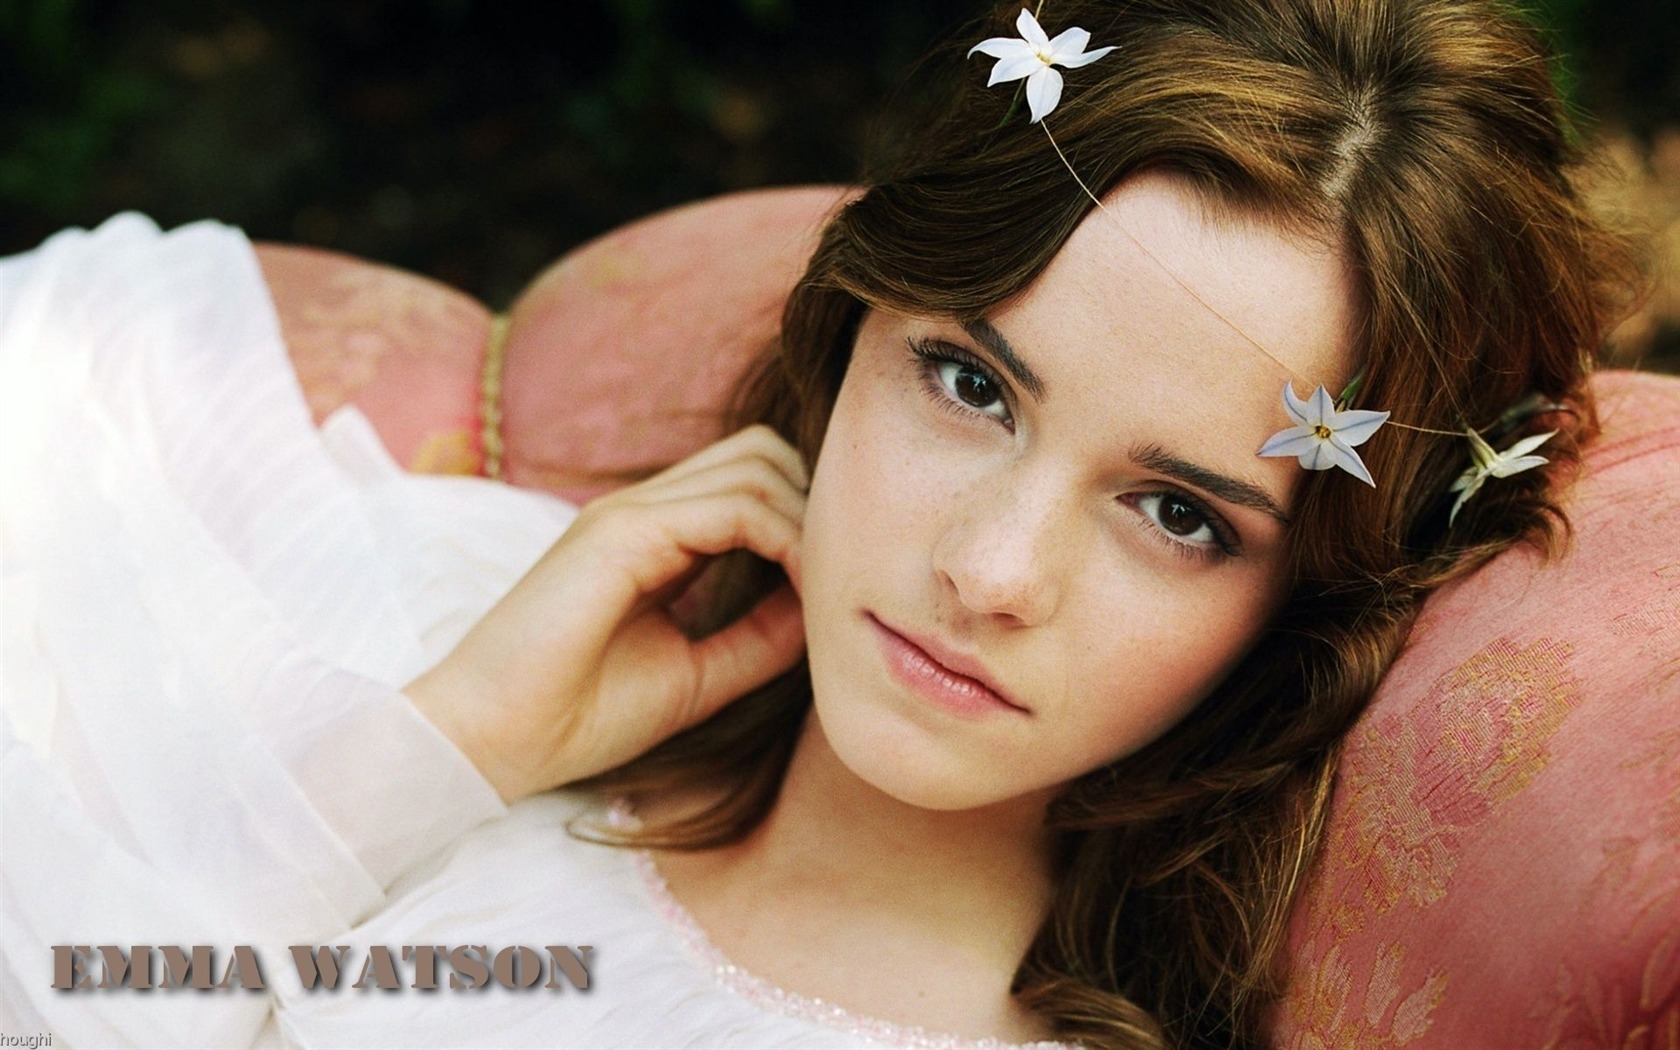 Emma Watson 艾玛·沃特森 美女壁纸27 - 1680x1050